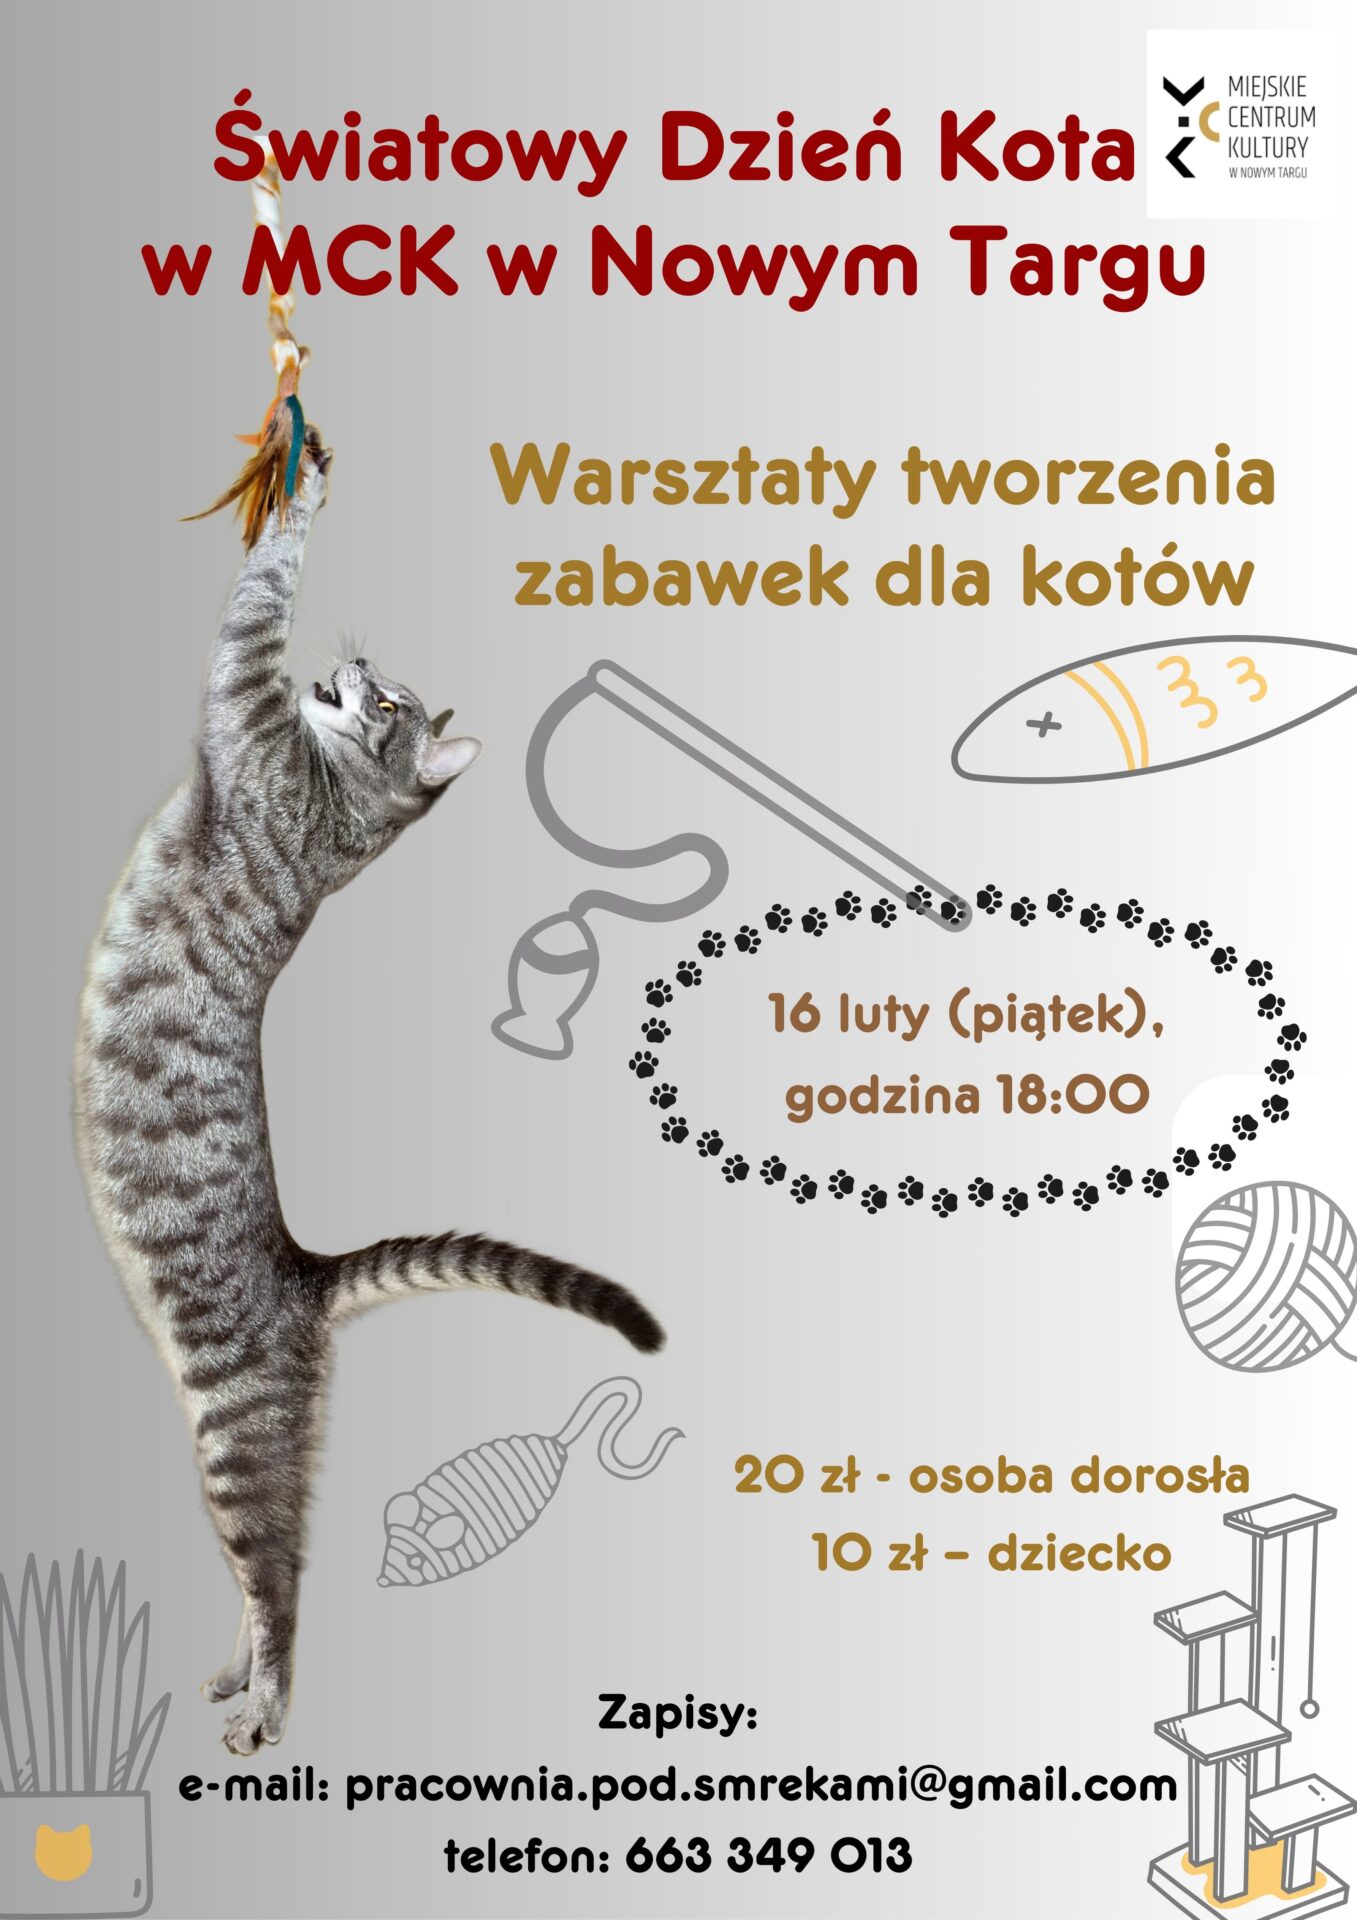 Światowy Dzień Kota tuż tuż... warsztaty kocich zabawek w MCK Nowy Targ